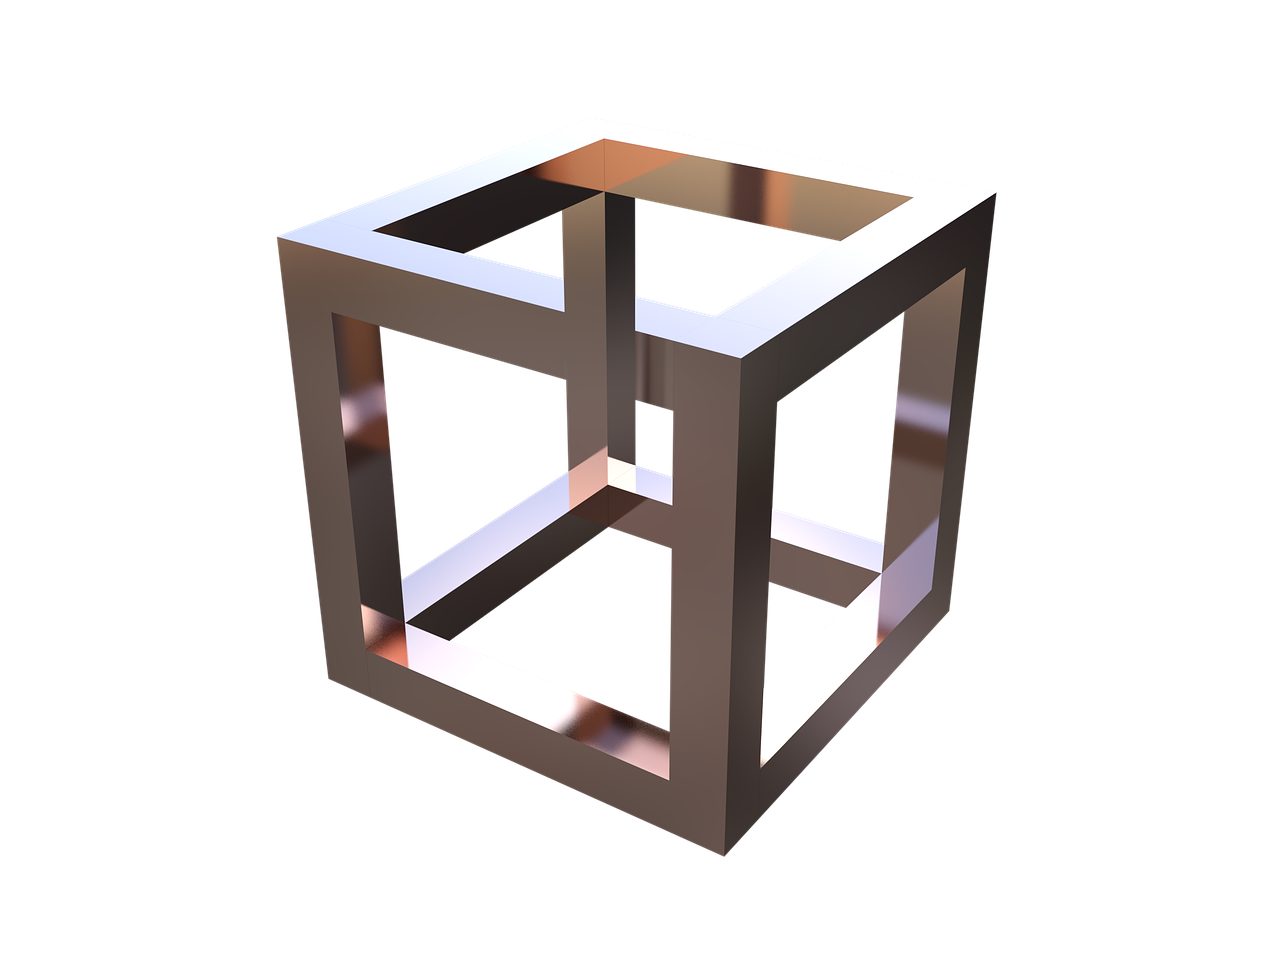 optical illusion cube geometric free photo